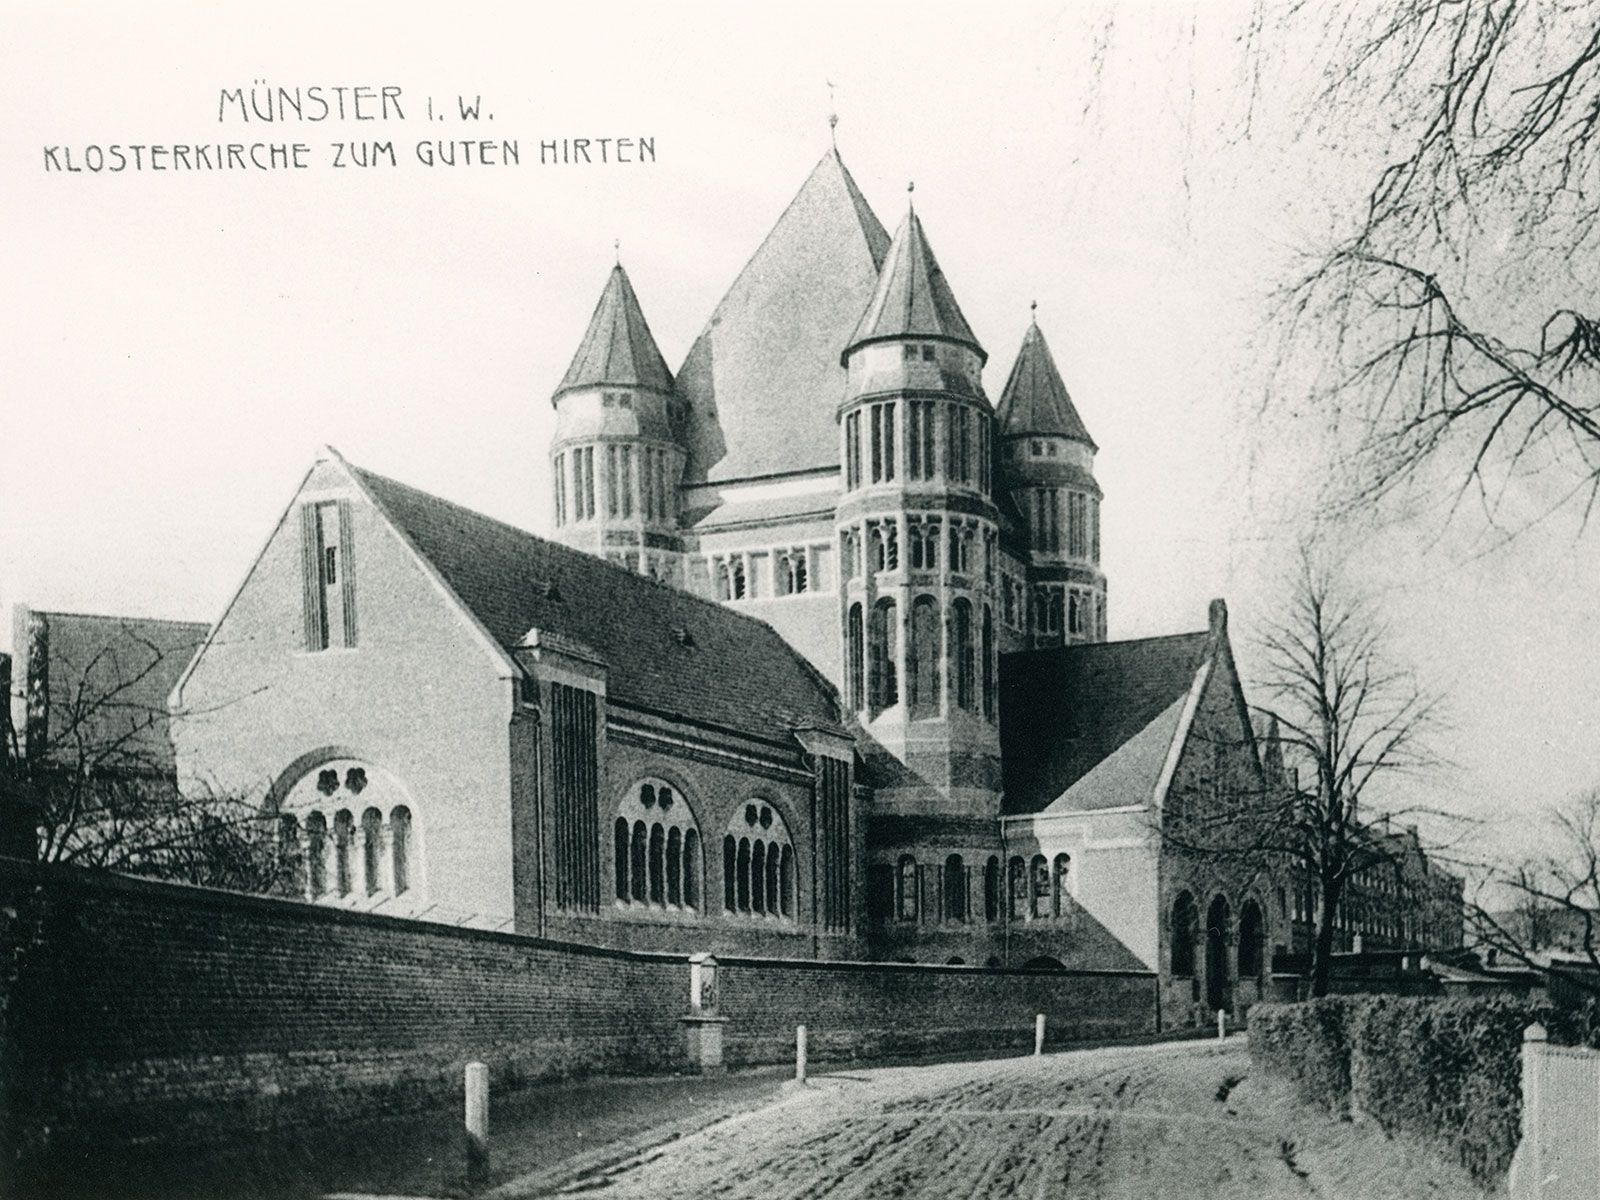 Ansichtkaart van de oude kloosterkerk